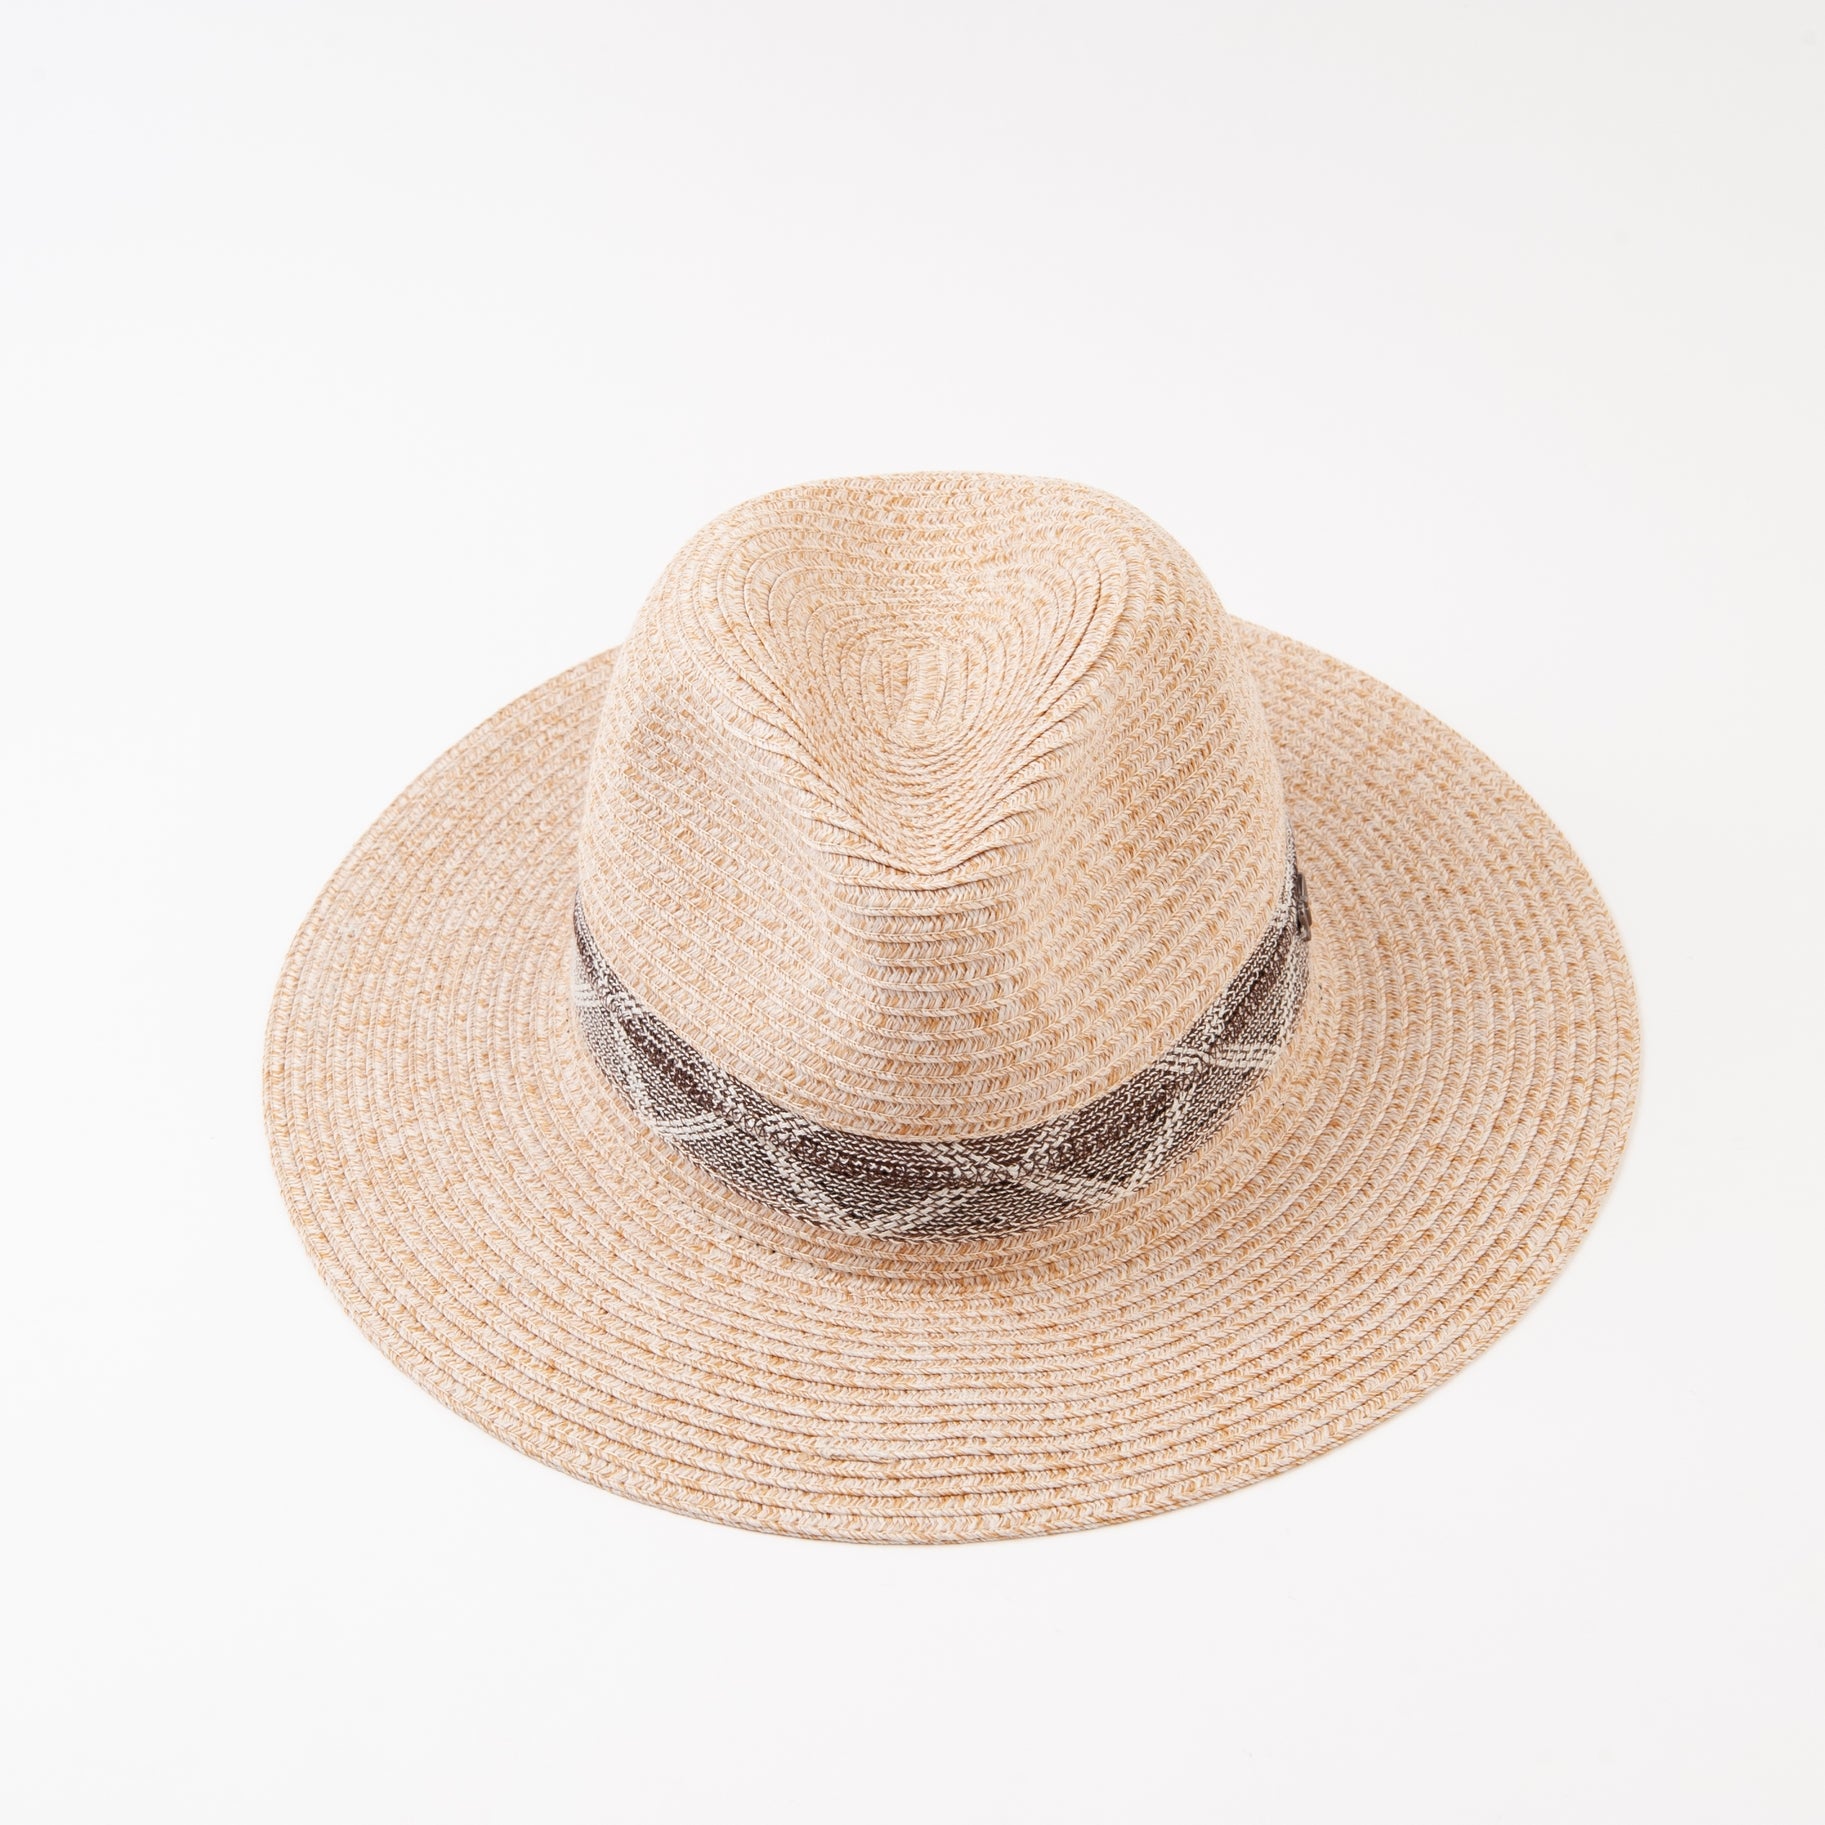 The Atsy Raffia Brimmed Sun Hat